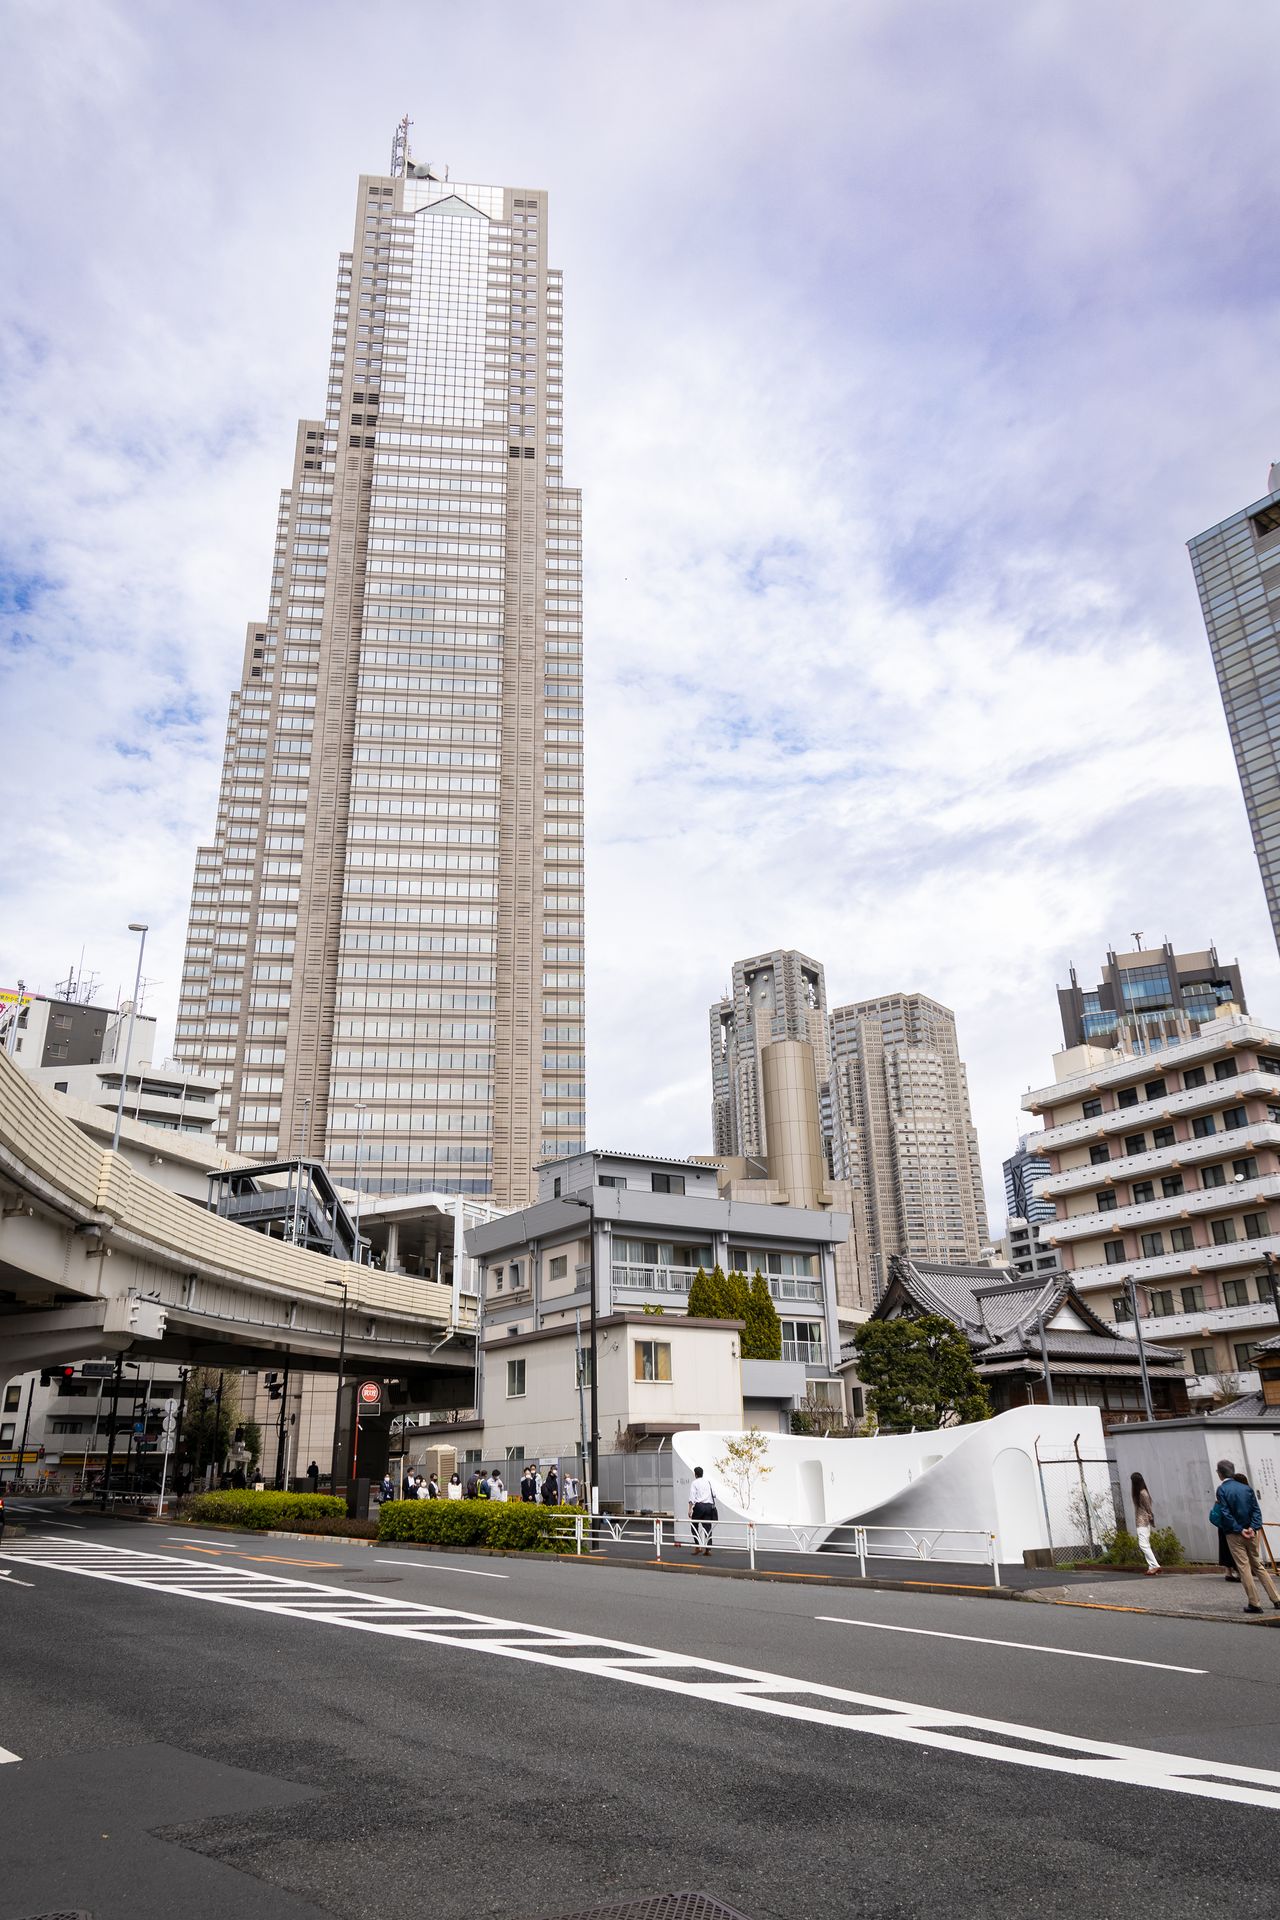 مرحاض عام ناصع البياض يتوهج في وسط المدينة. يمكن رؤية فندق بارك حياة طوكيو وناطحة سحاب مبنى بلدية العاصمة طوكيو خلفه.